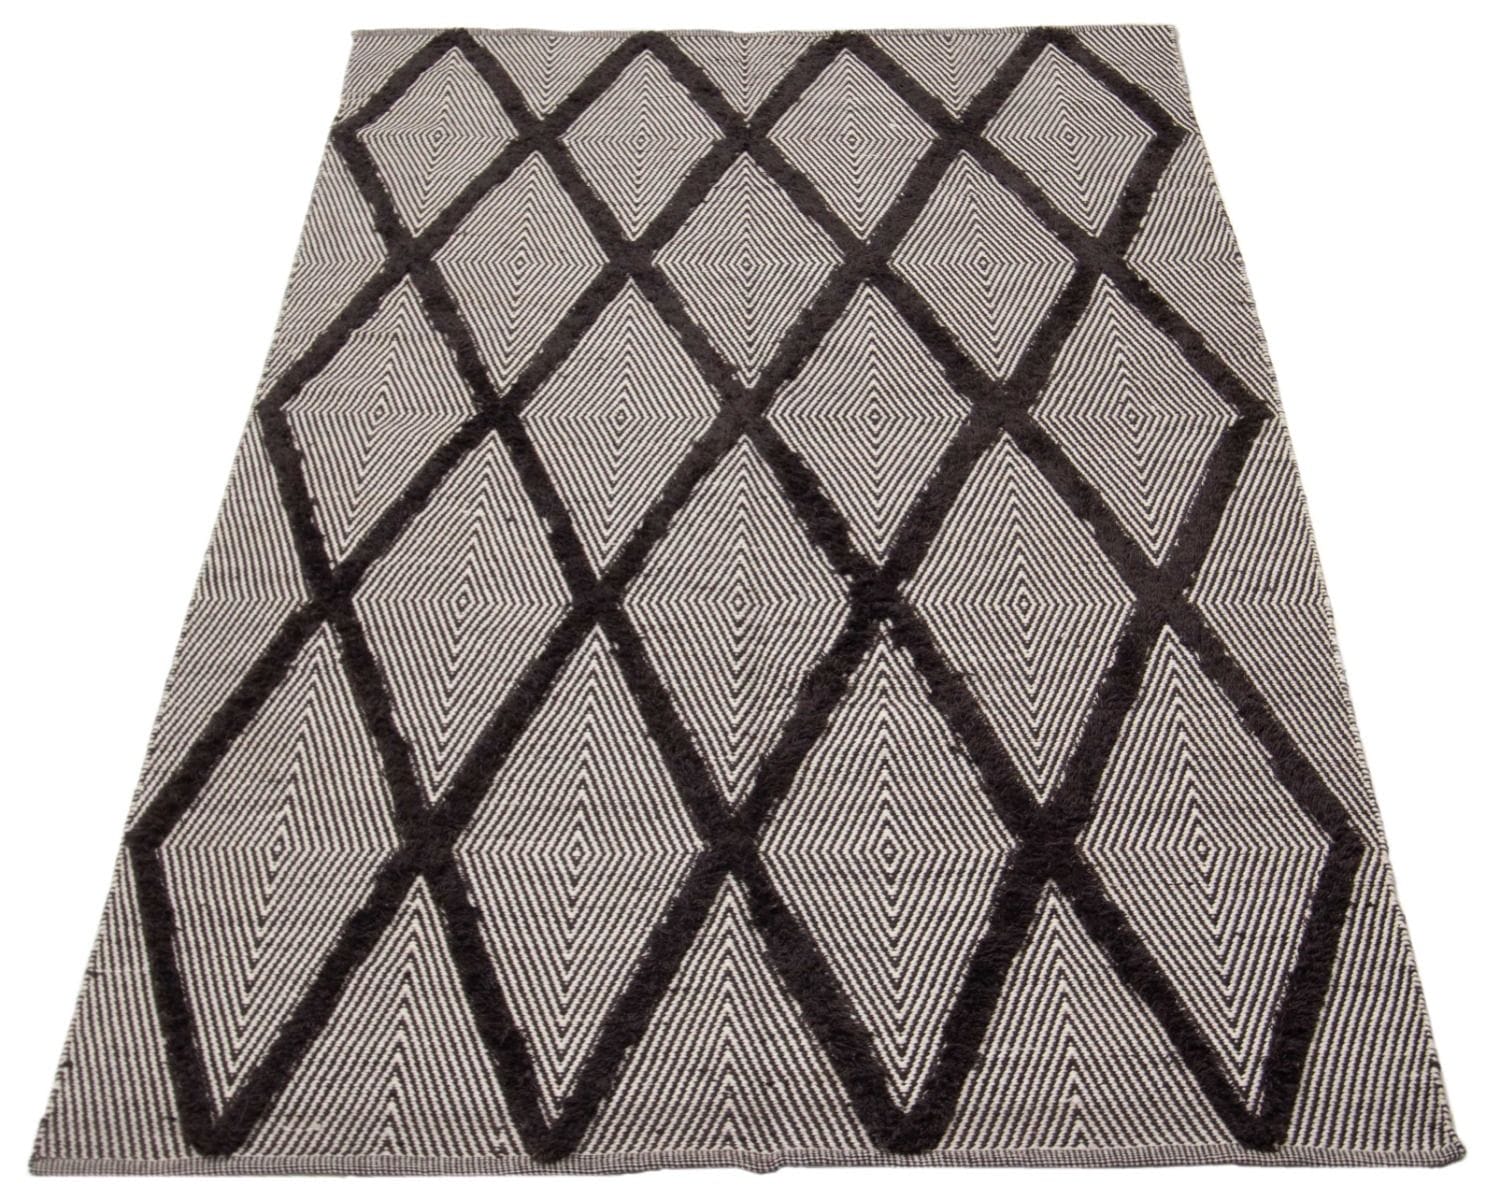 Een grijs en zwart vloerkleed met een ruitpatroon.